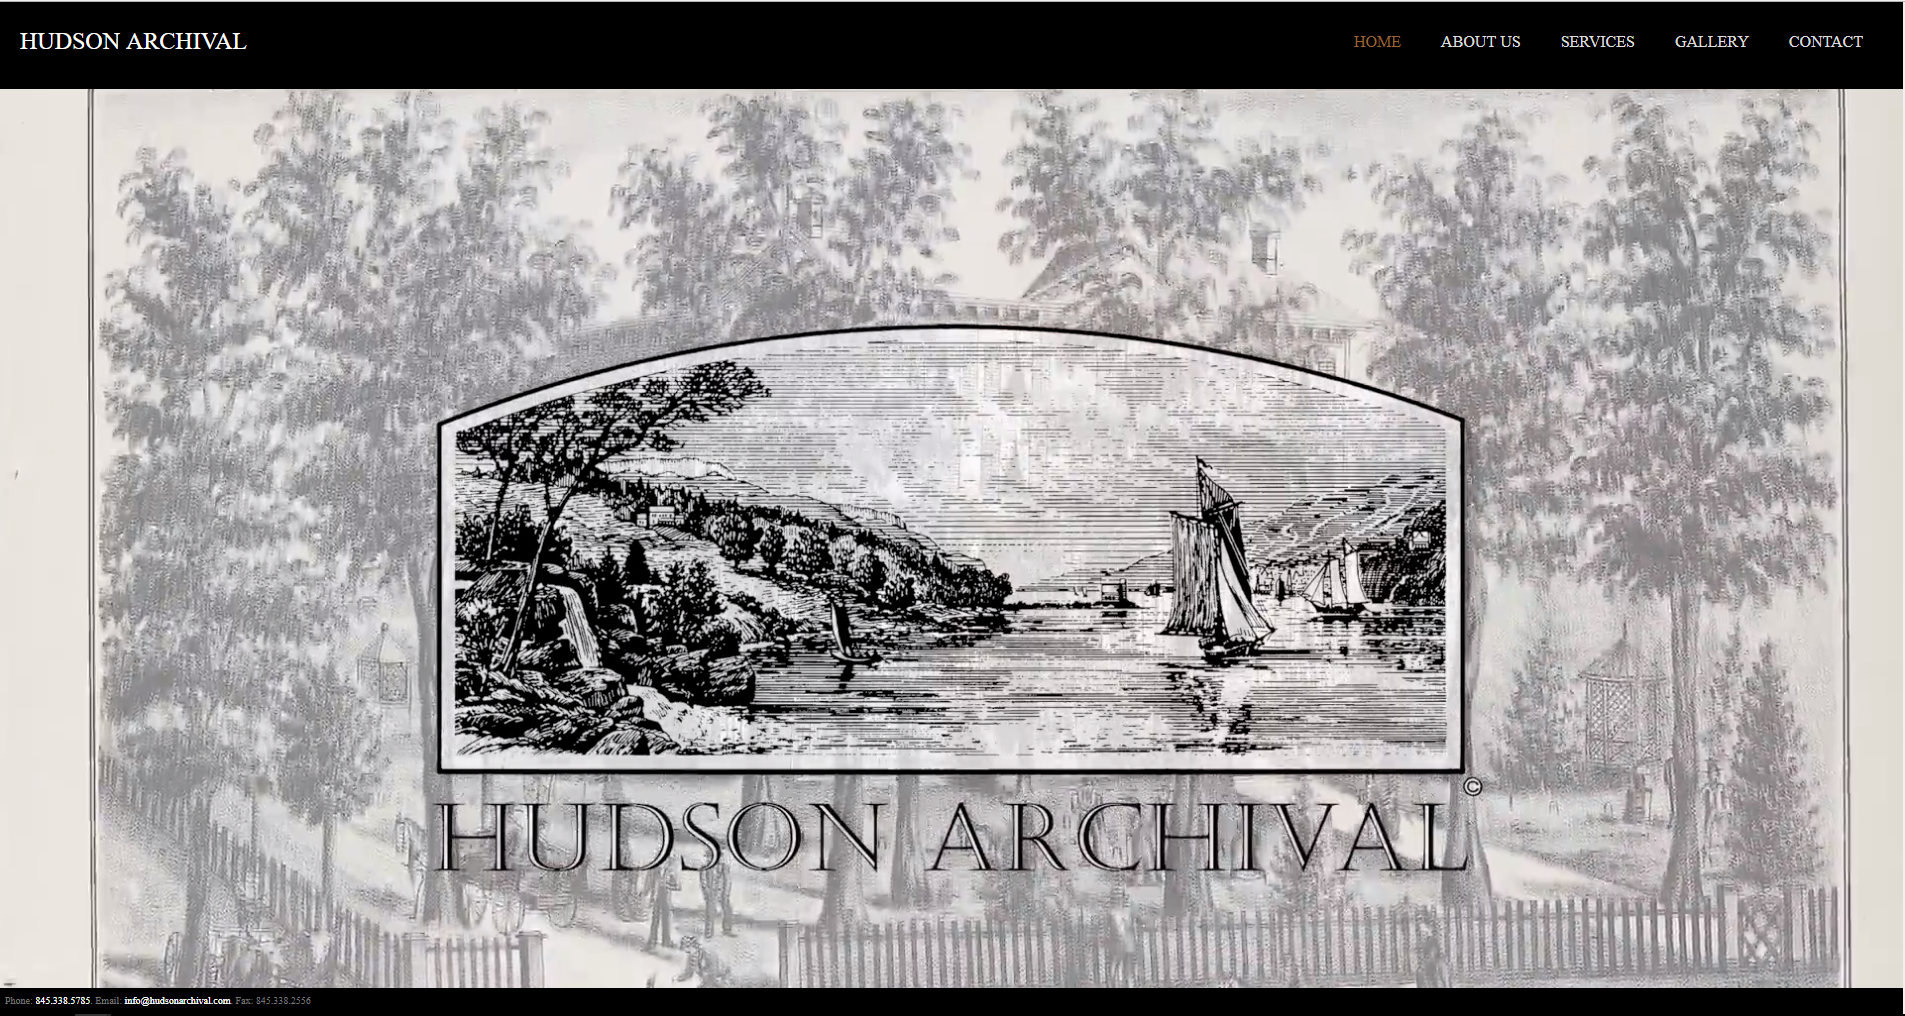 Hudson Archival